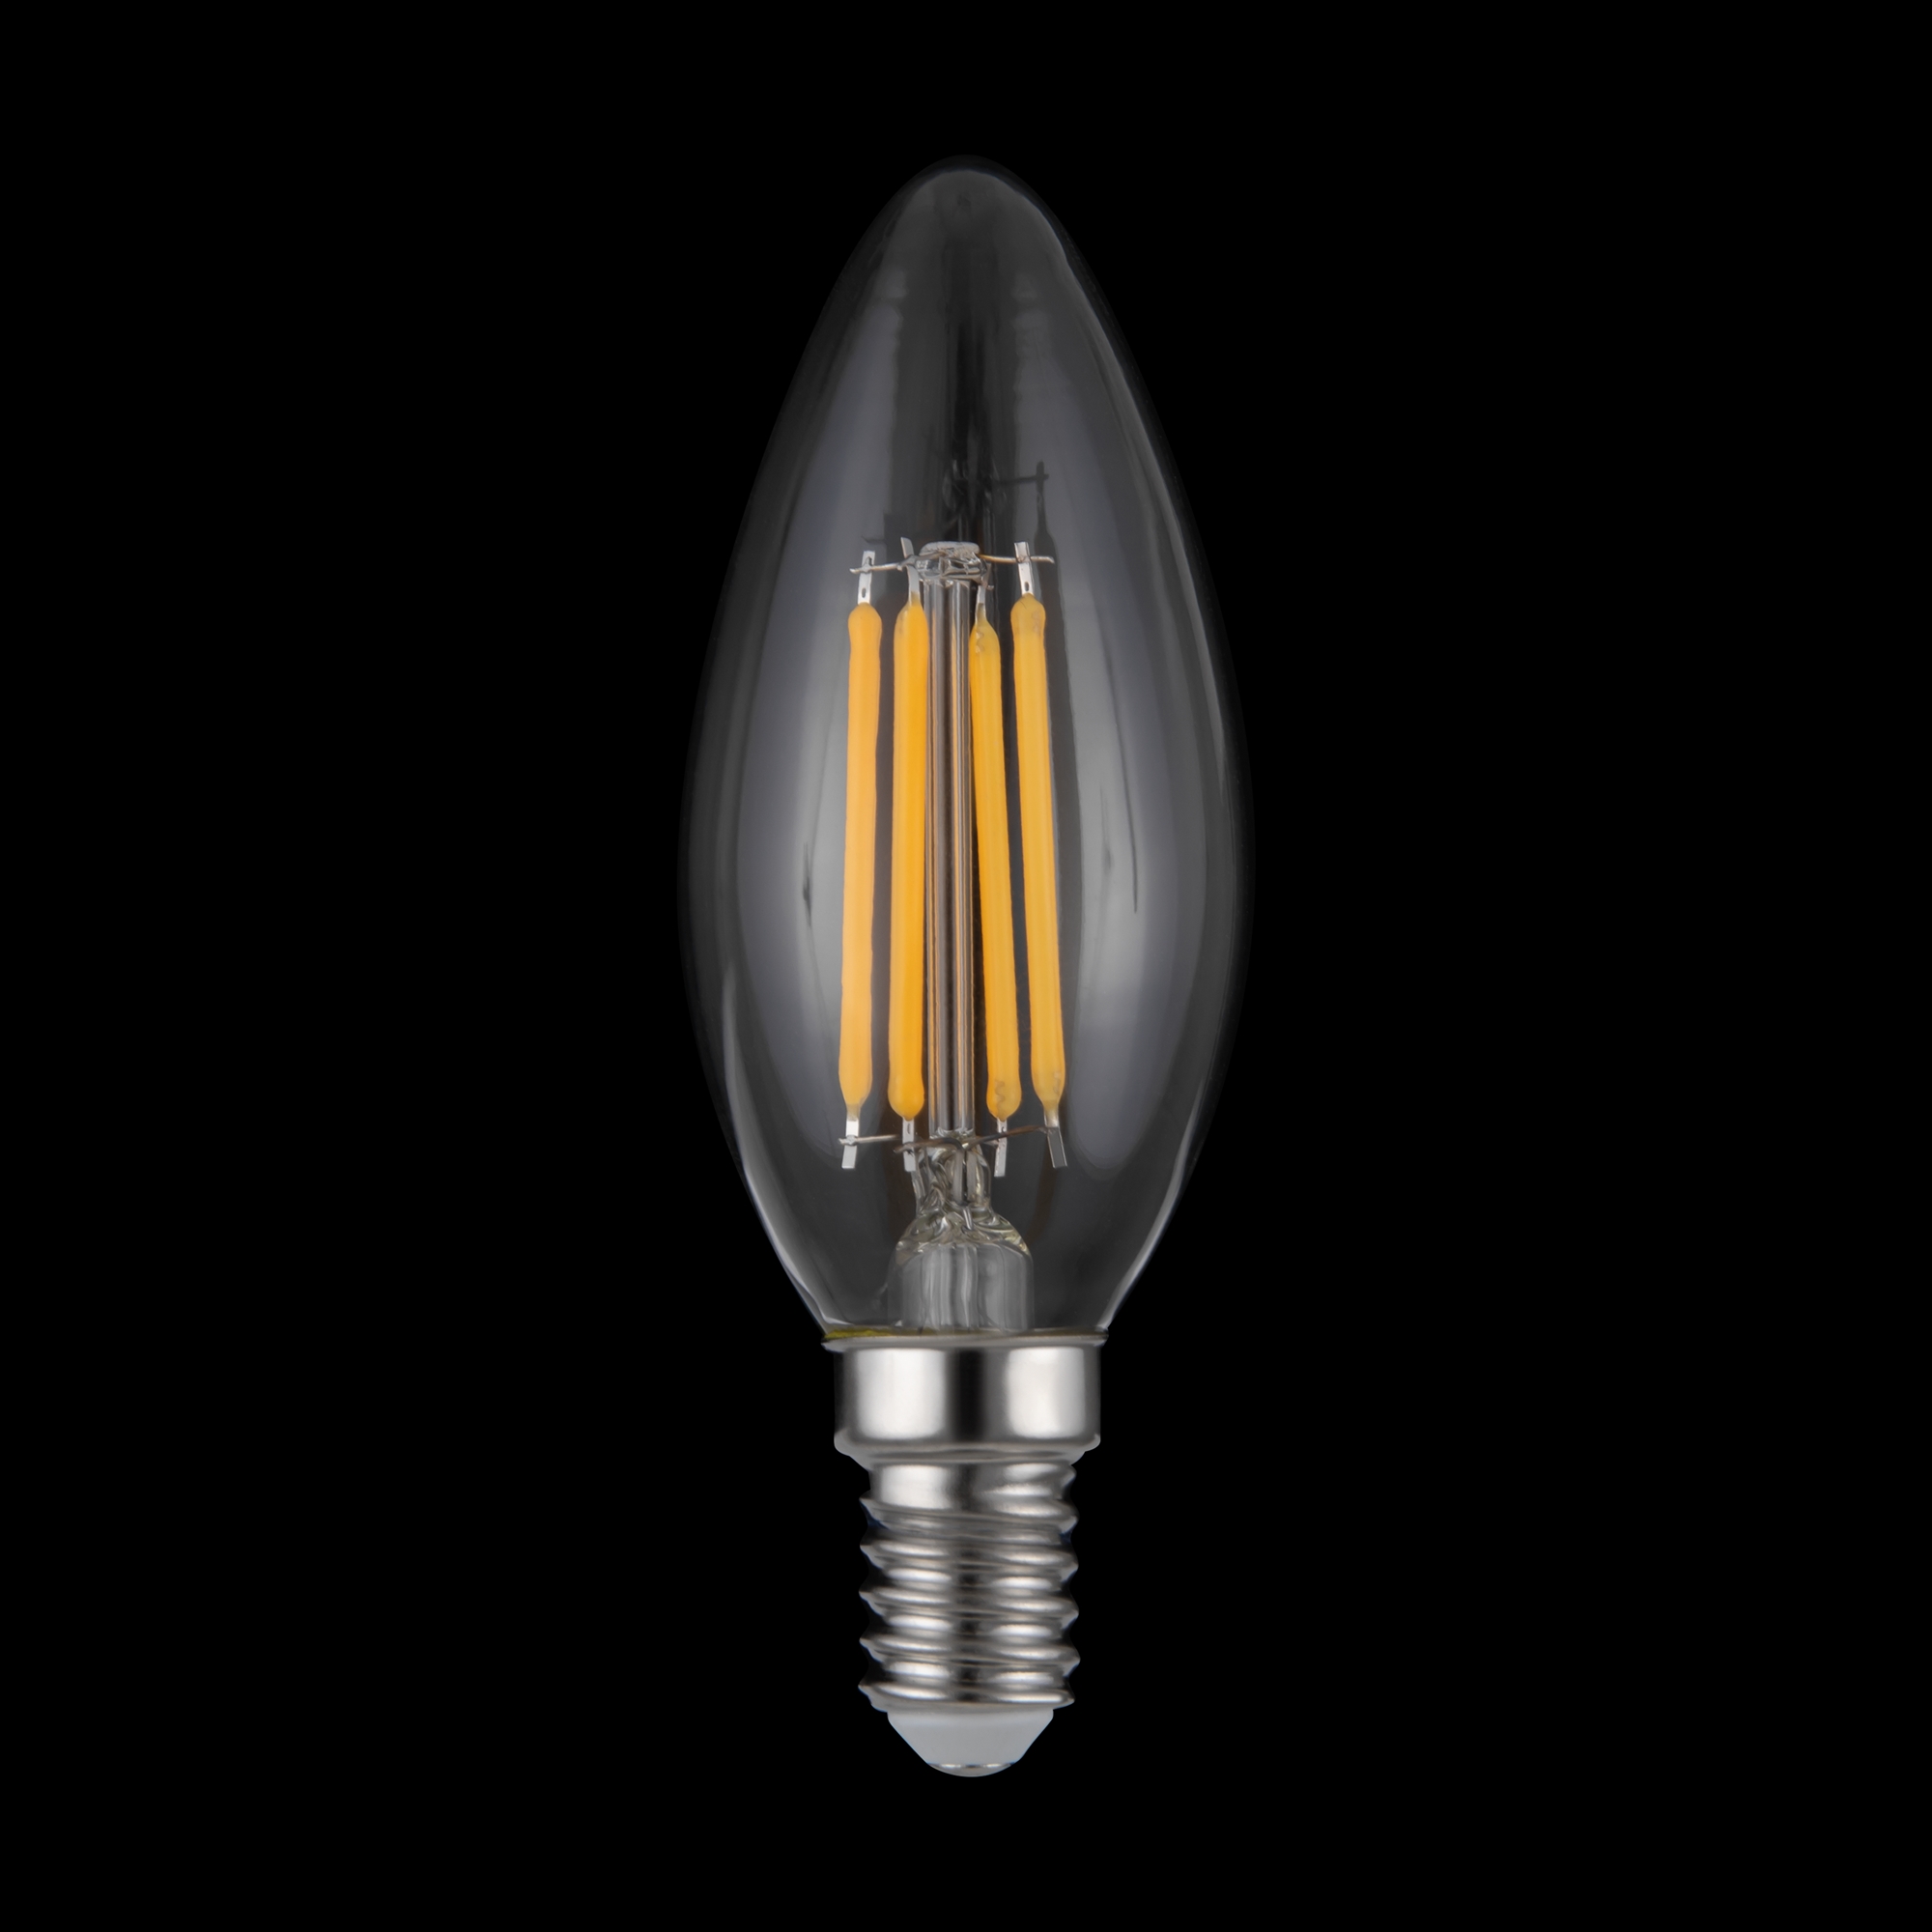 Лампа светодиодная филаментная диммируемая Voltega E14 5W 3000K свеча прозрачная 8460